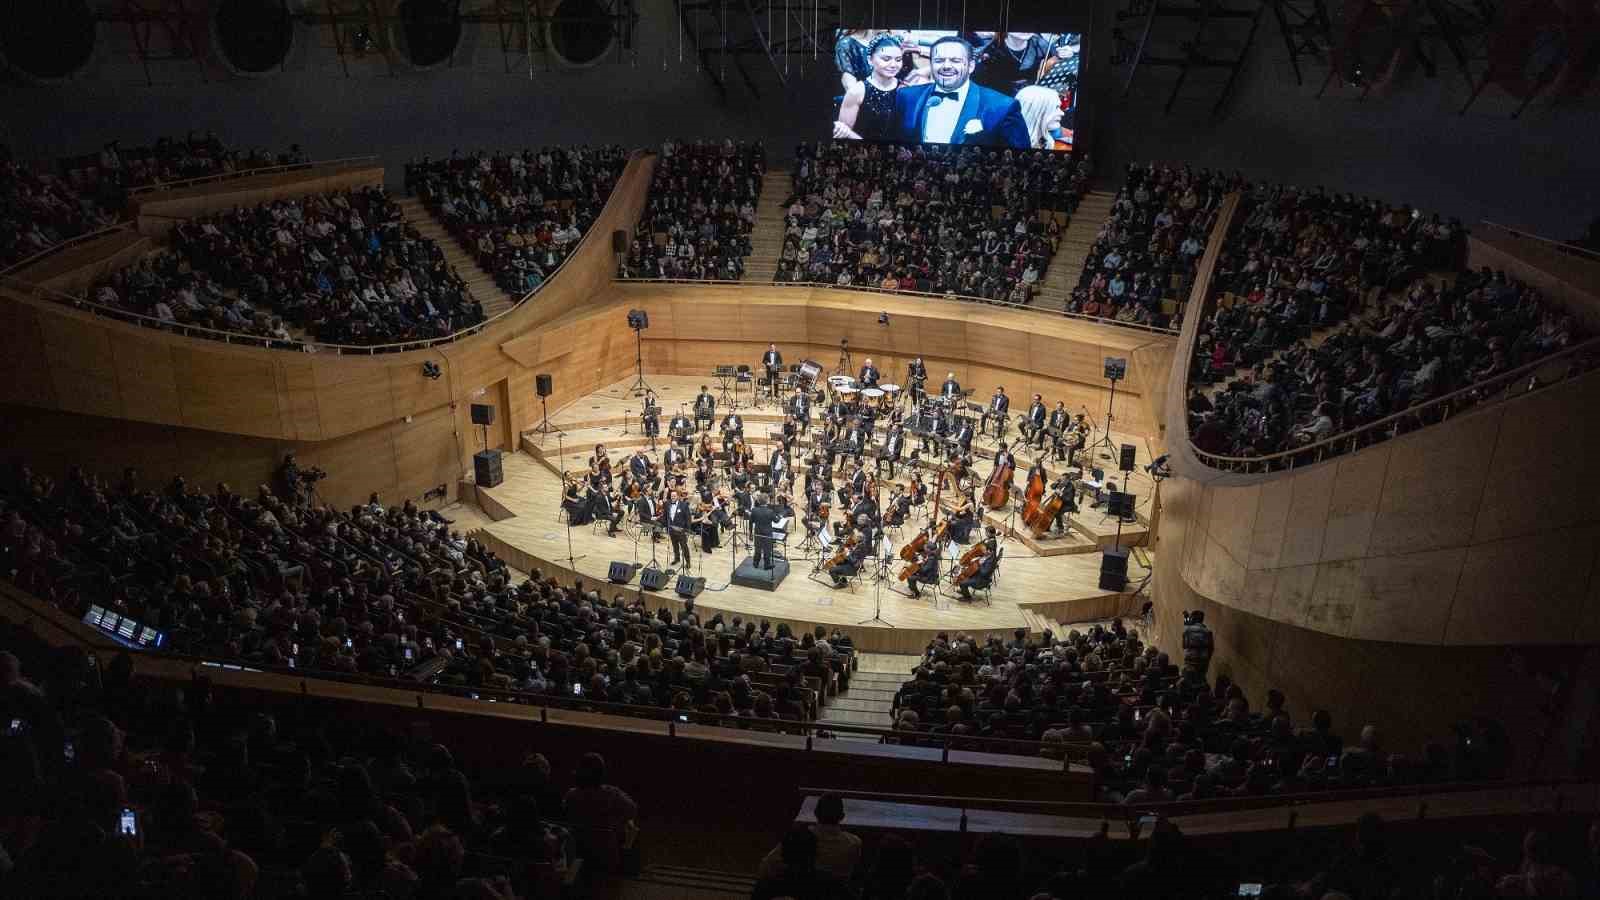 Limak Filarmoni Orkestrasi Yeni Yil Konserleri Basliyor 0 Ug1Orq6F